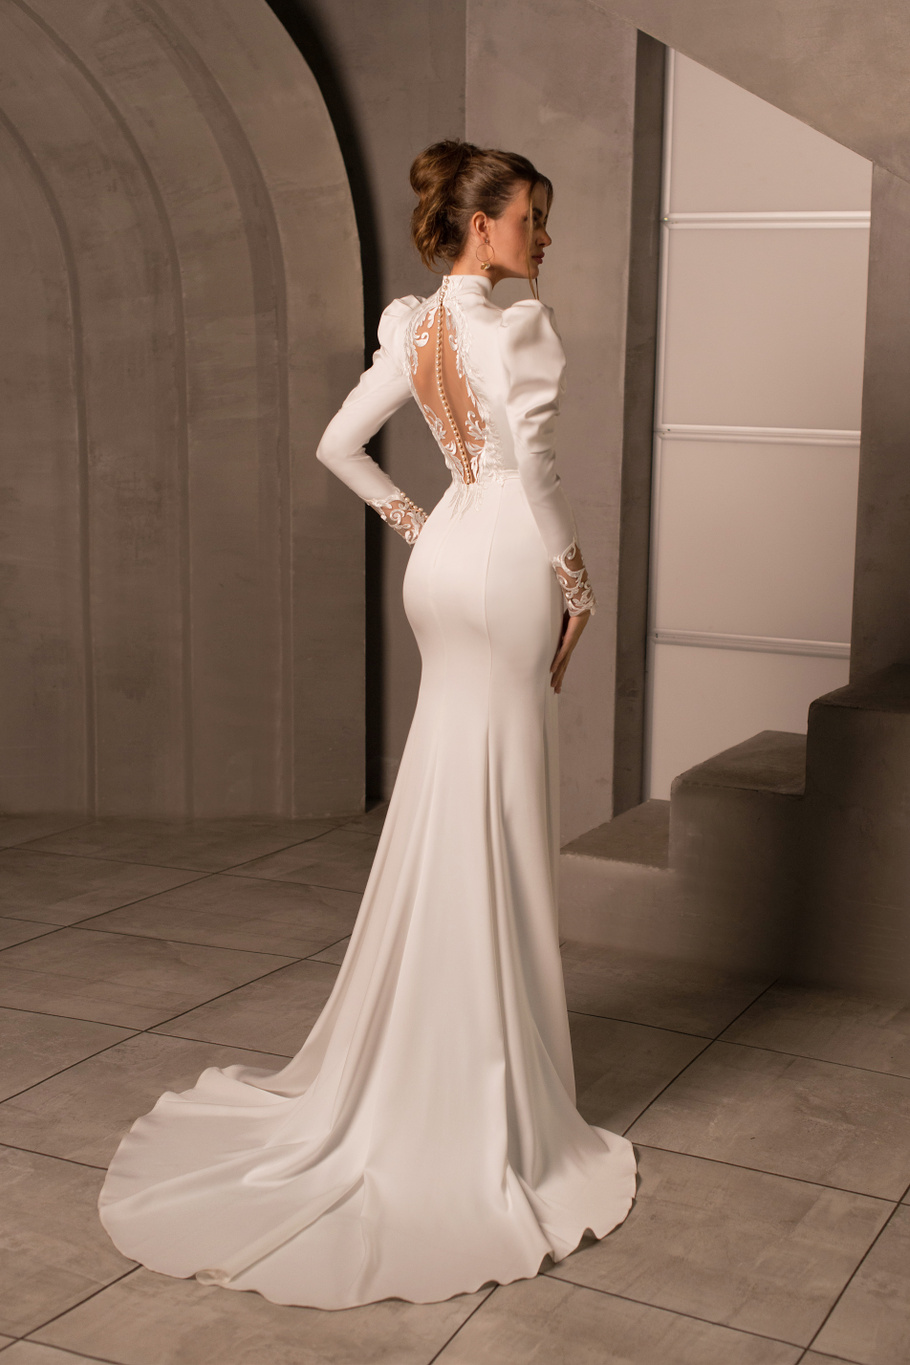 Купить свадебное платье «Лиор» Мэрри Марк из коллекции Минимализм 2023 года в салоне «Мэри Трюфель»